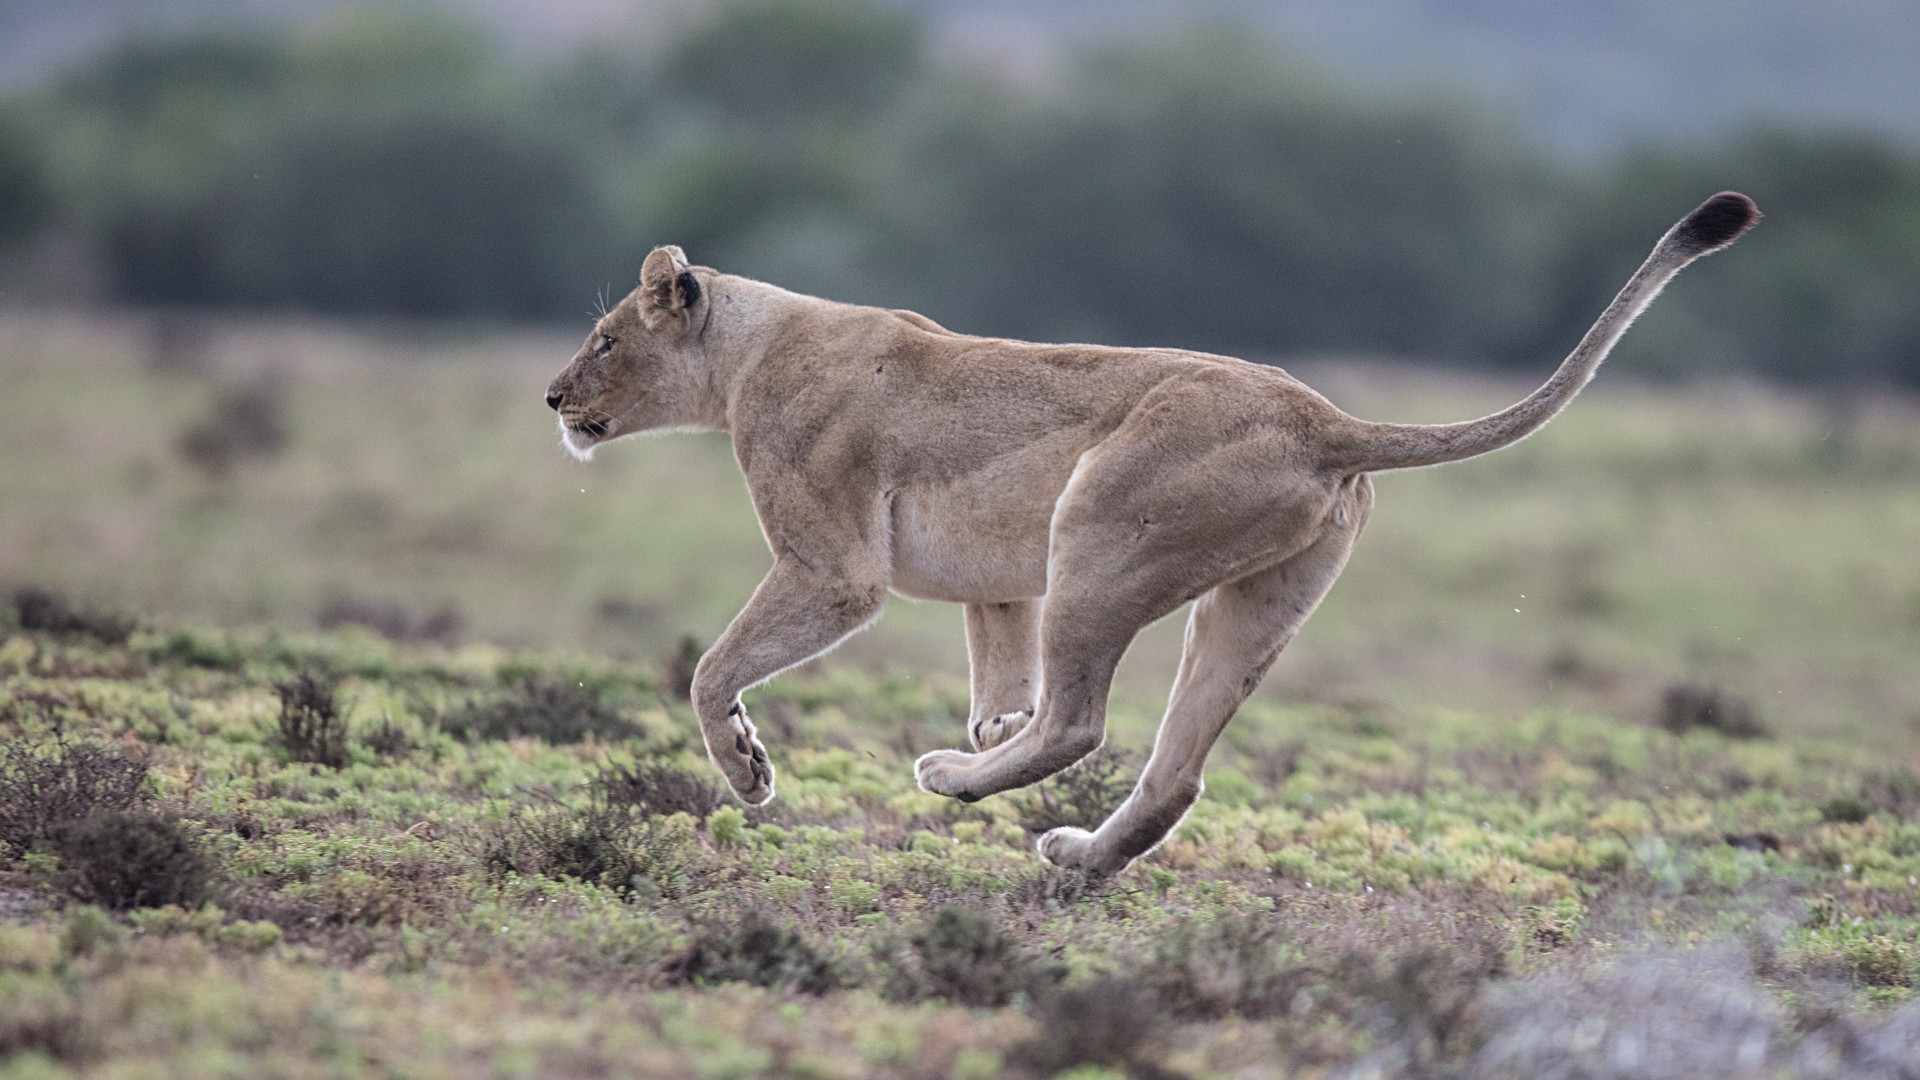 A wild lioness running through grassland